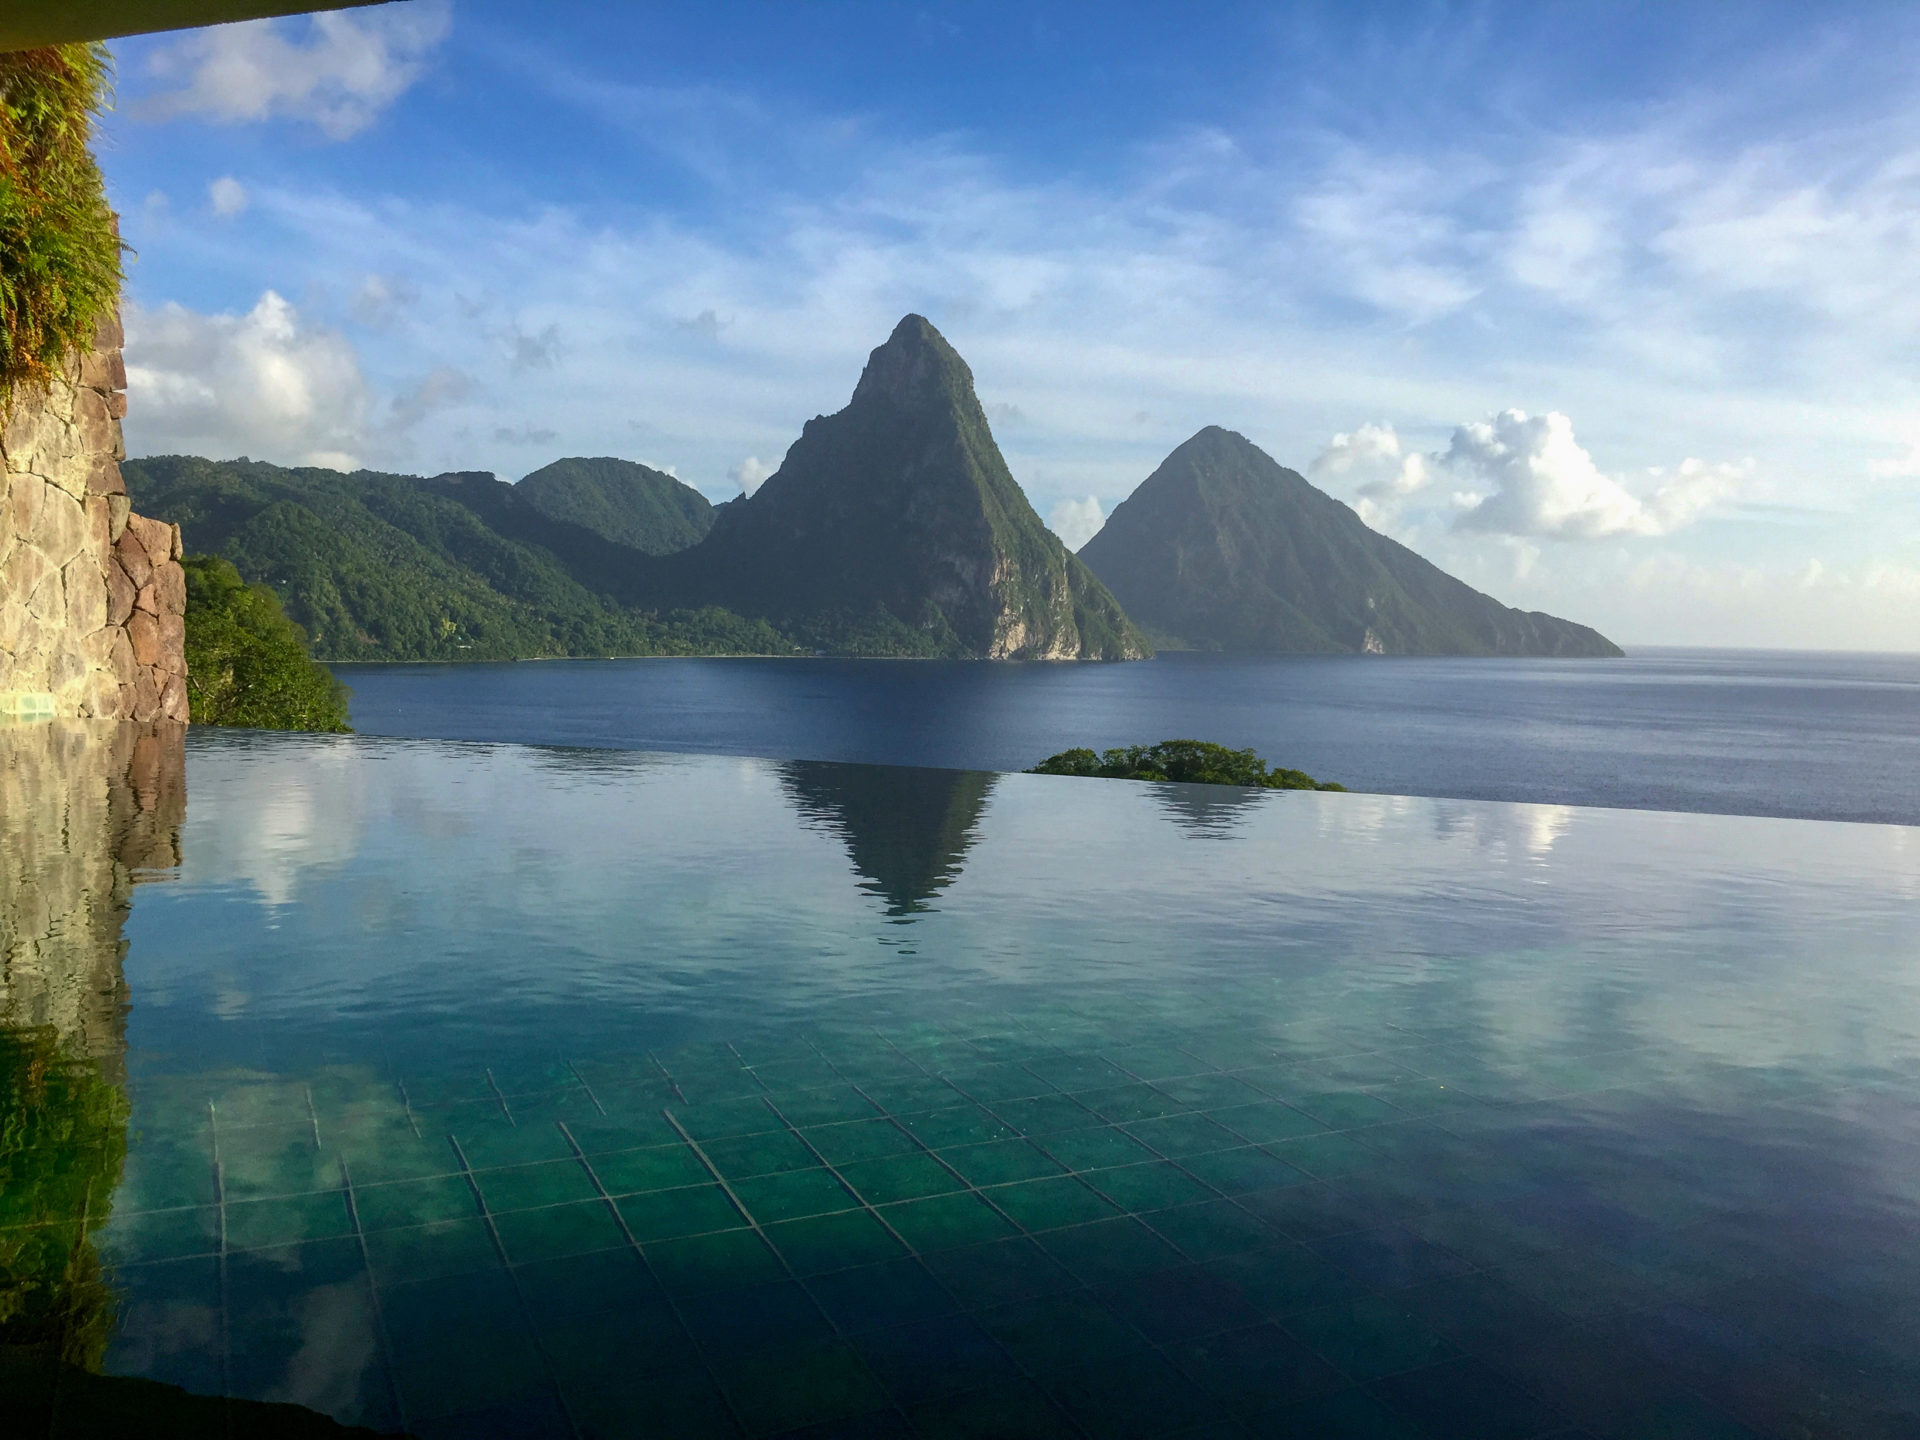 Infinity Pool im Hotel Jade Mountain mit Blick auf die Pitons von Saint Lucia